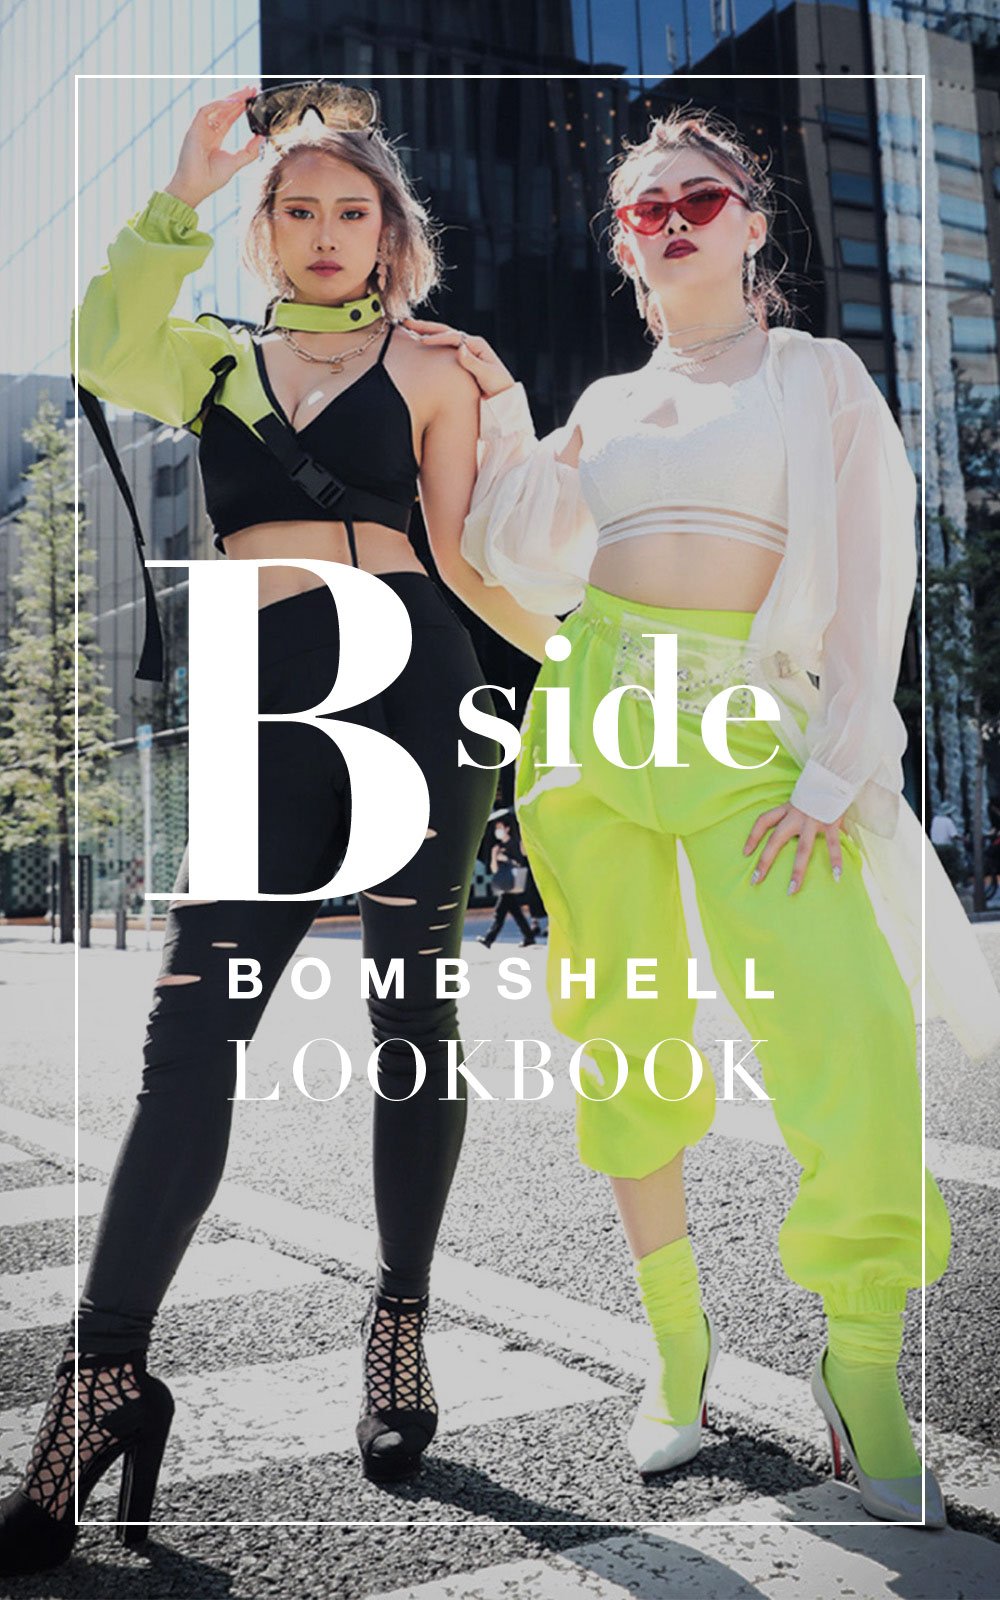 ダンス衣装通販のボムシェル[bombshell]・Lookbook vol.05-01